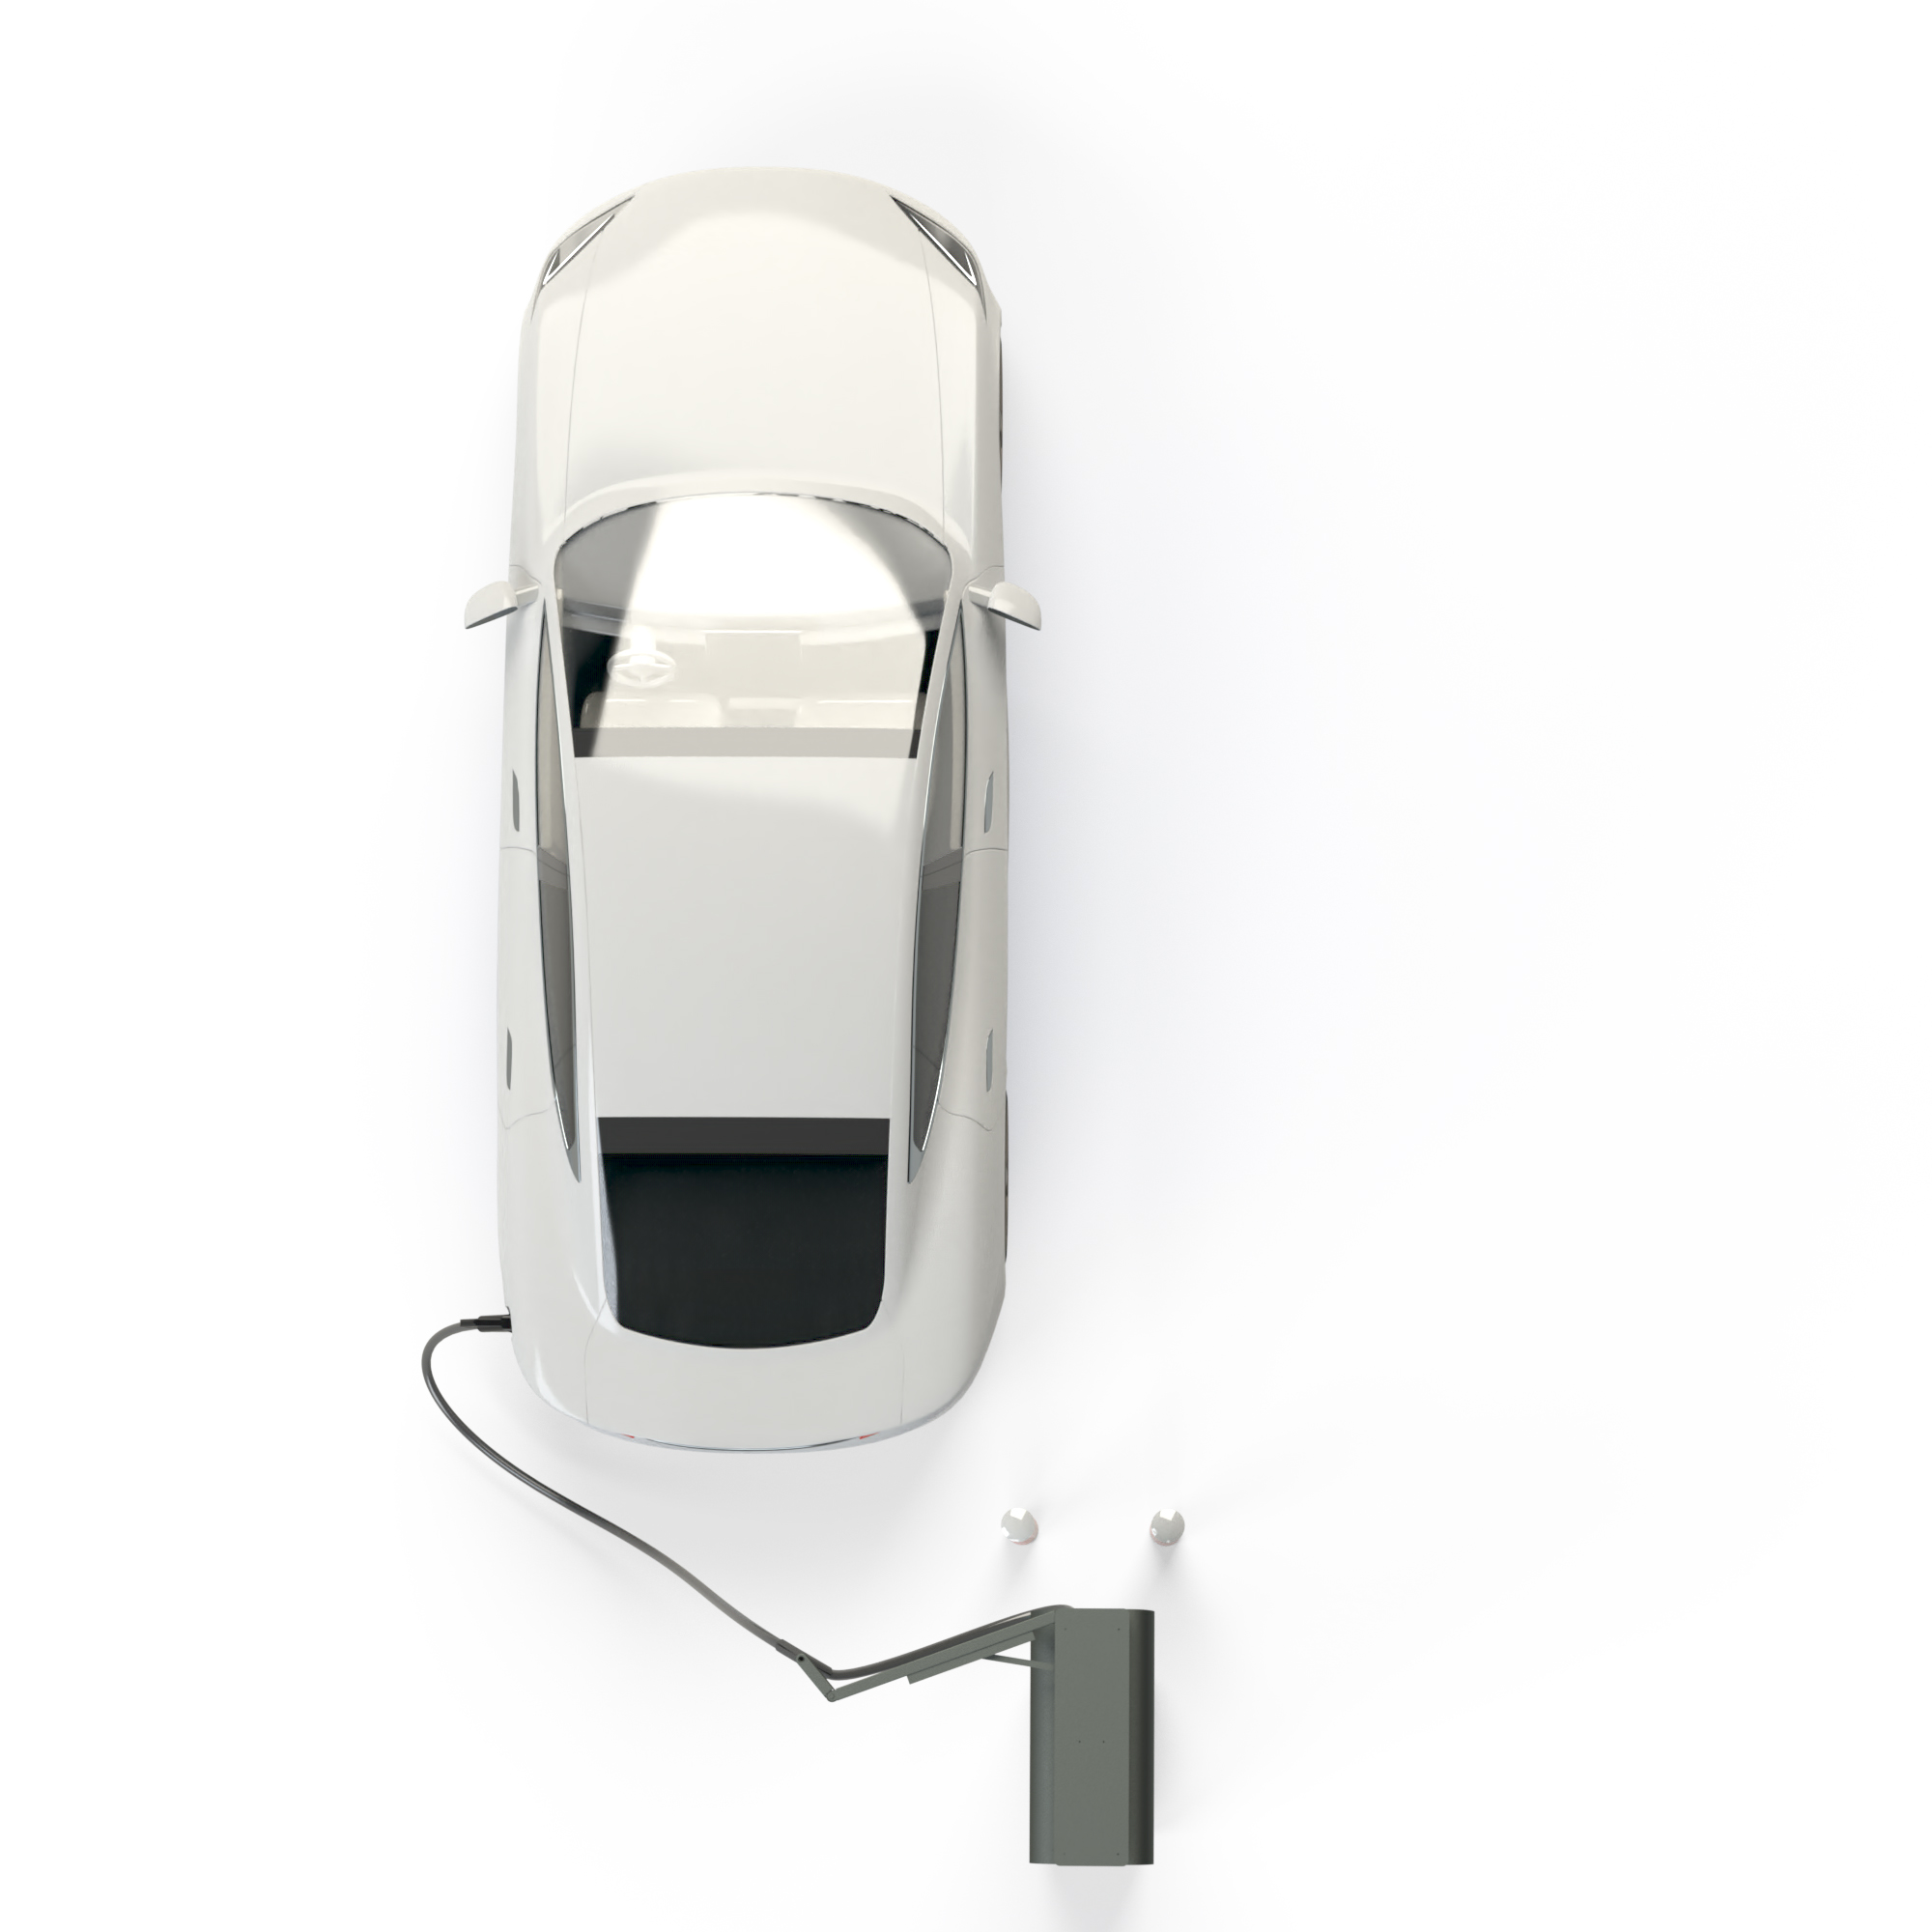 Elektroauto parkt an Alpitronic Hypercharger mit Kabelmanagement für HYC150 mit einem Kabel